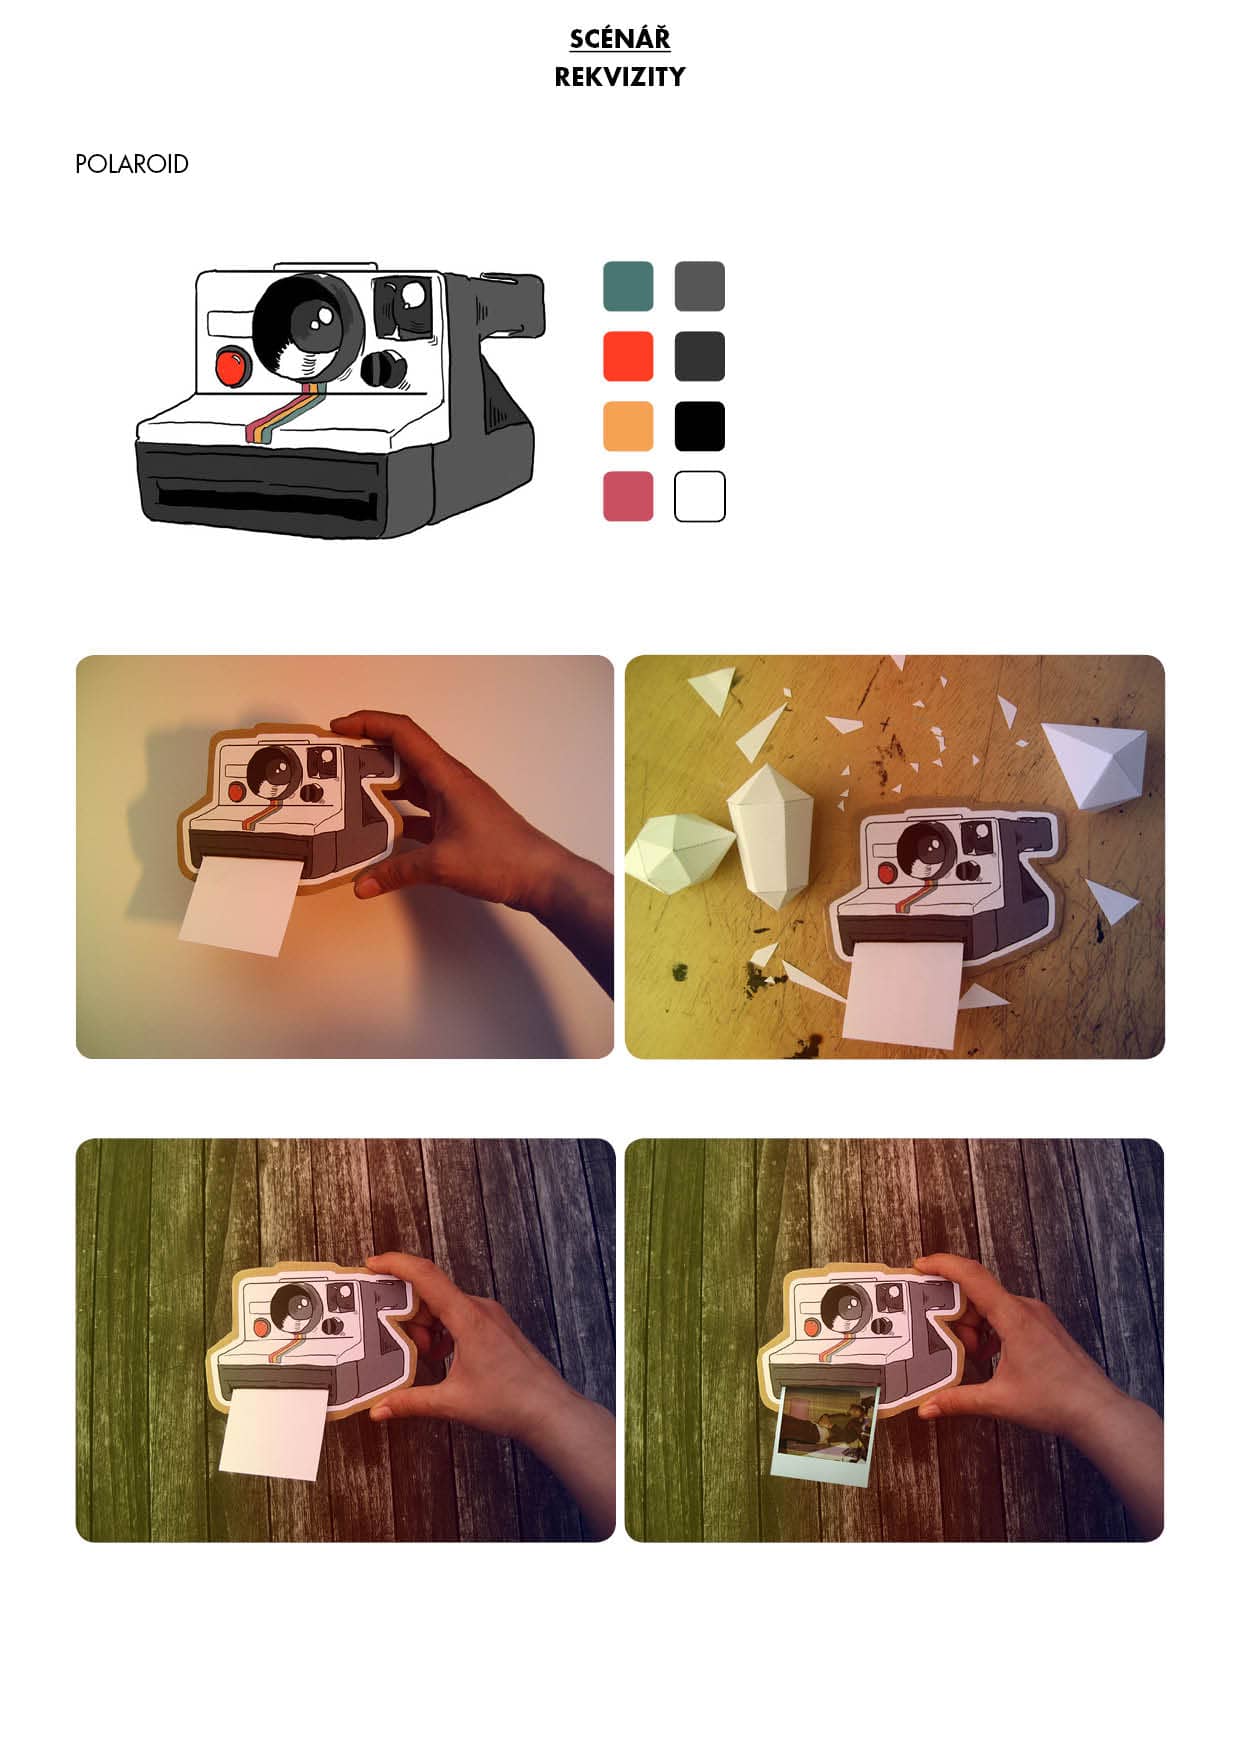 Náhled papírové kulisy / polaroid